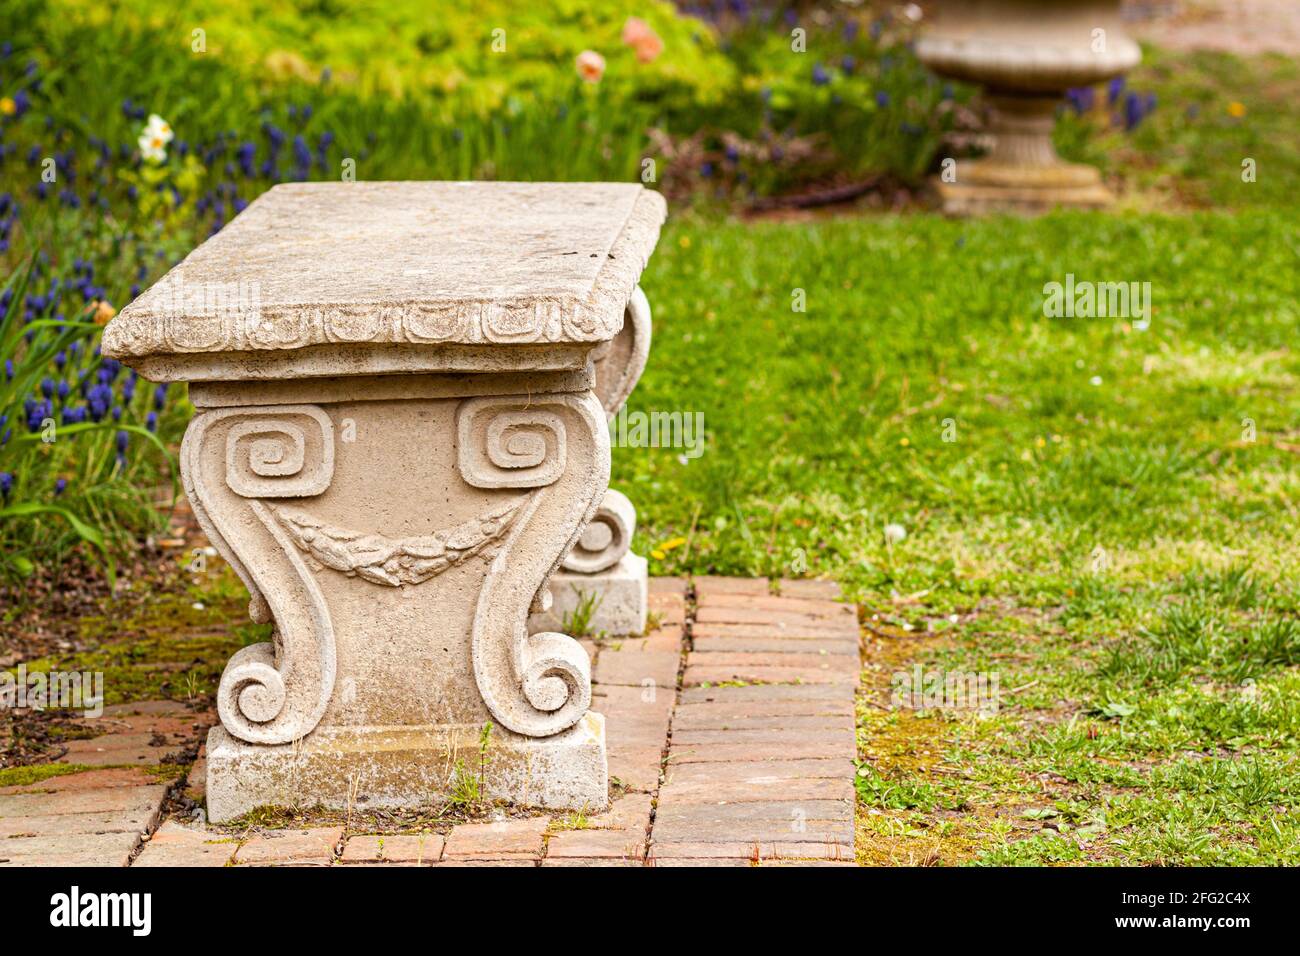 Un banc de jardin en pierre sculpté d'époque sur un terrain d'herbe dans un parc ou un jardin. Il a des motifs symétriques en spirale rappelant les figues grecques ou romaines anciennes Banque D'Images